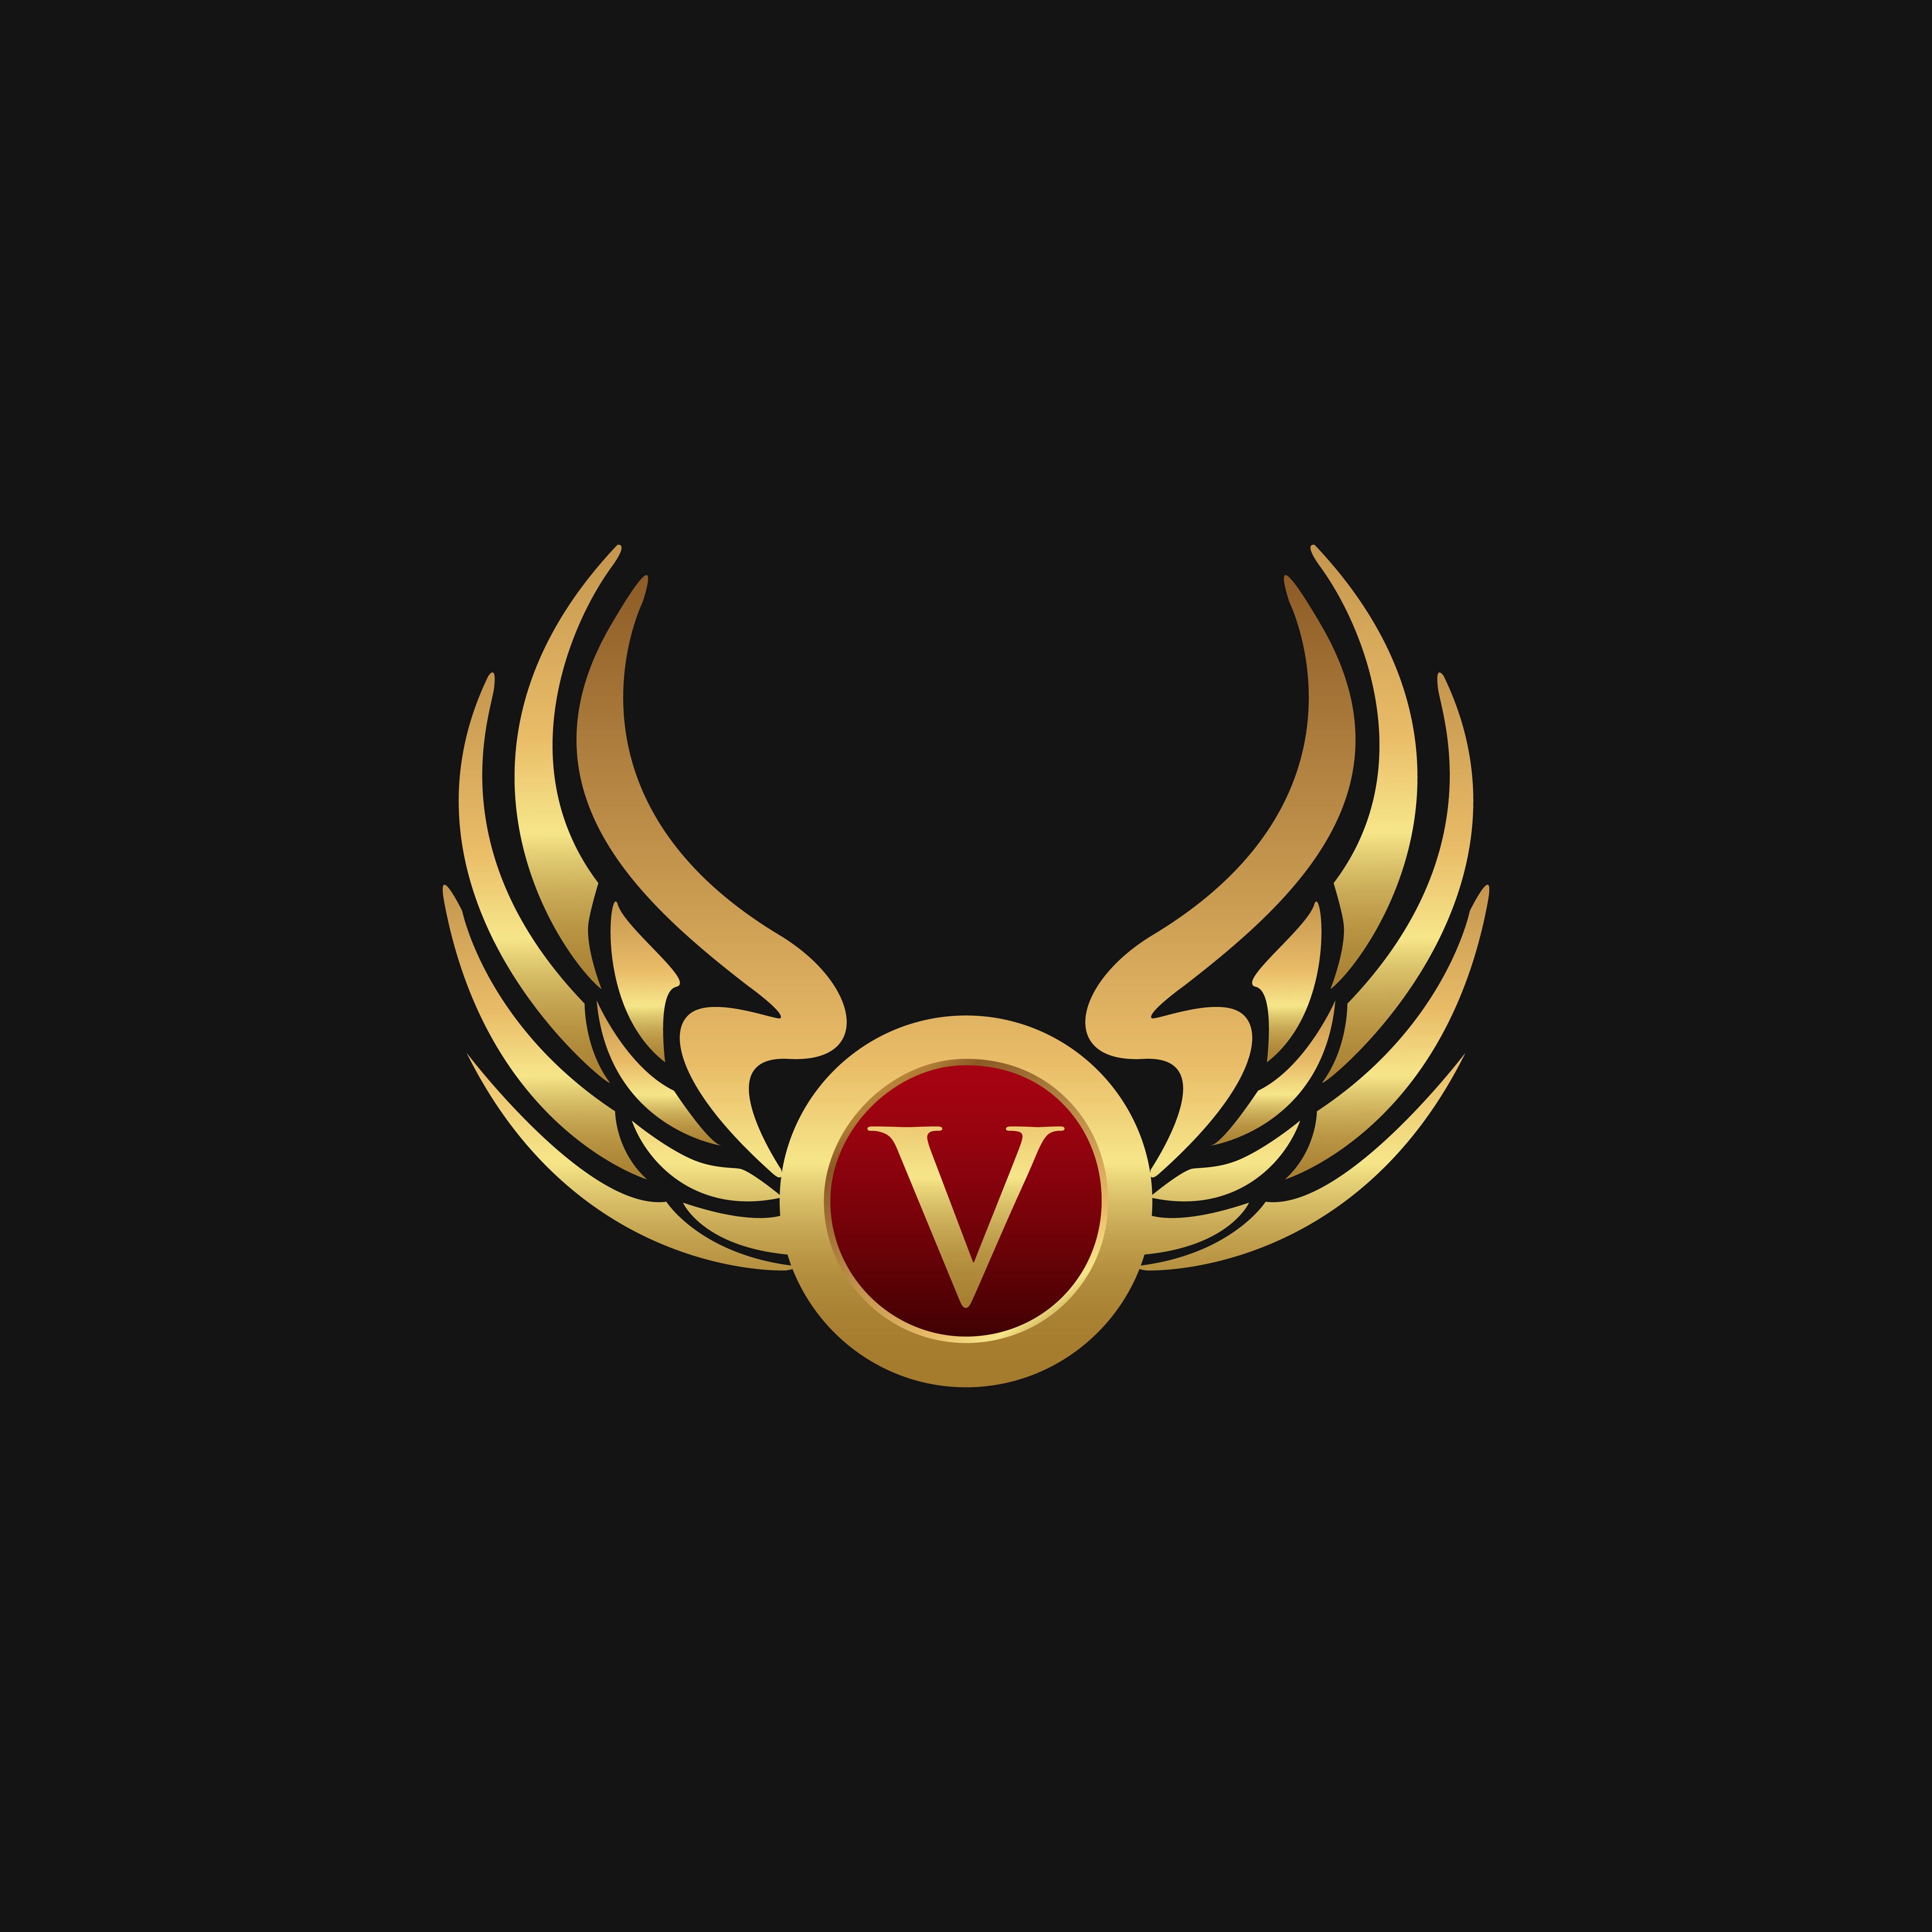 Luxury Letter V Emblem Wings logo design concept template 611194